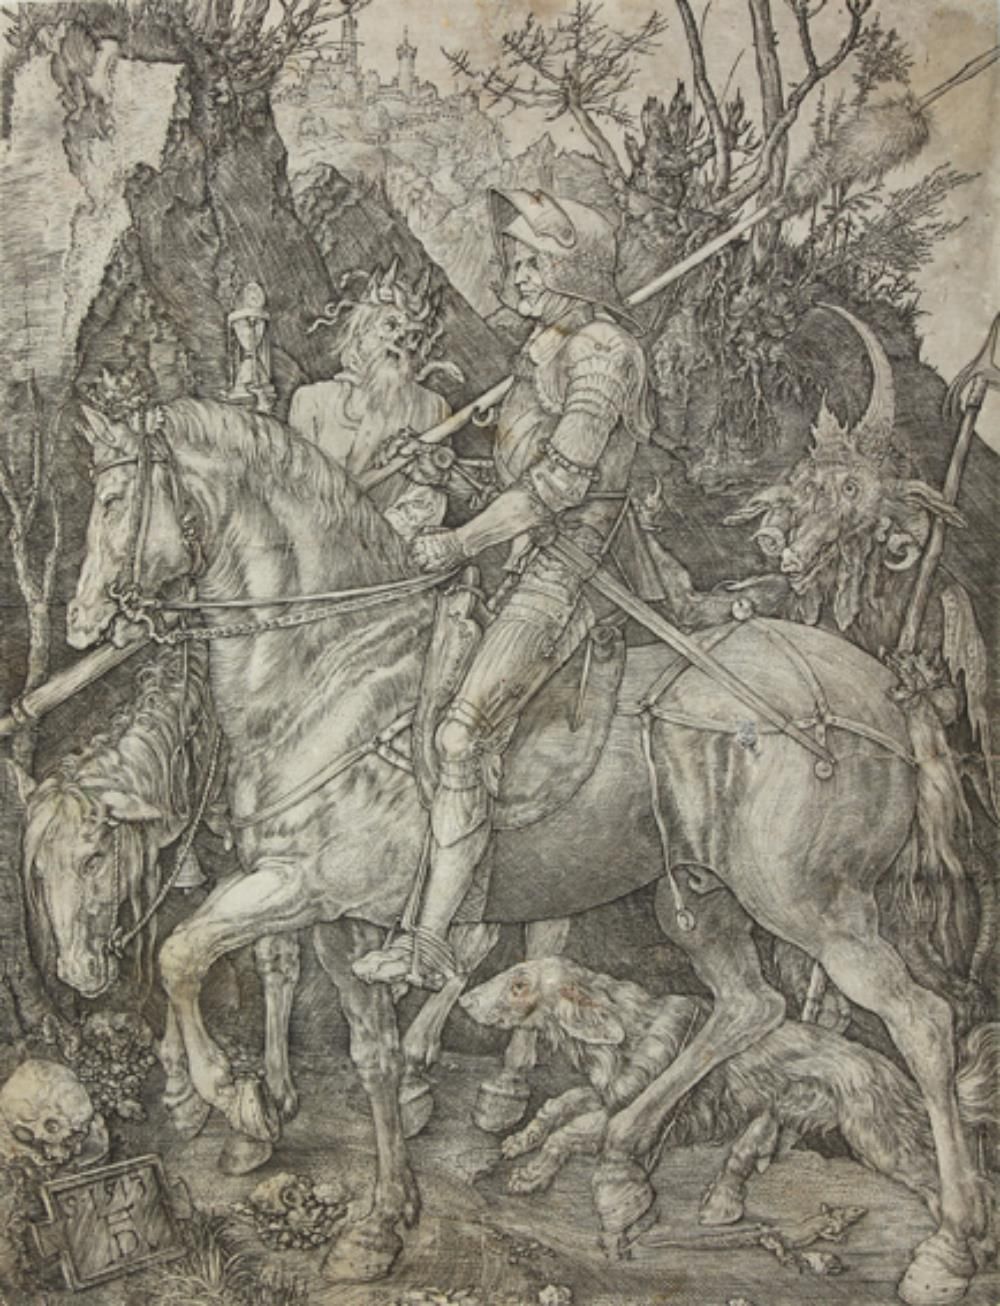 DURER, Albrecht (1471 - 1528 纽伦堡)。骑士、死亡和魔鬼。铜版画。24,5 x 18,7厘米。1513. B. 98, Meder &hellip;